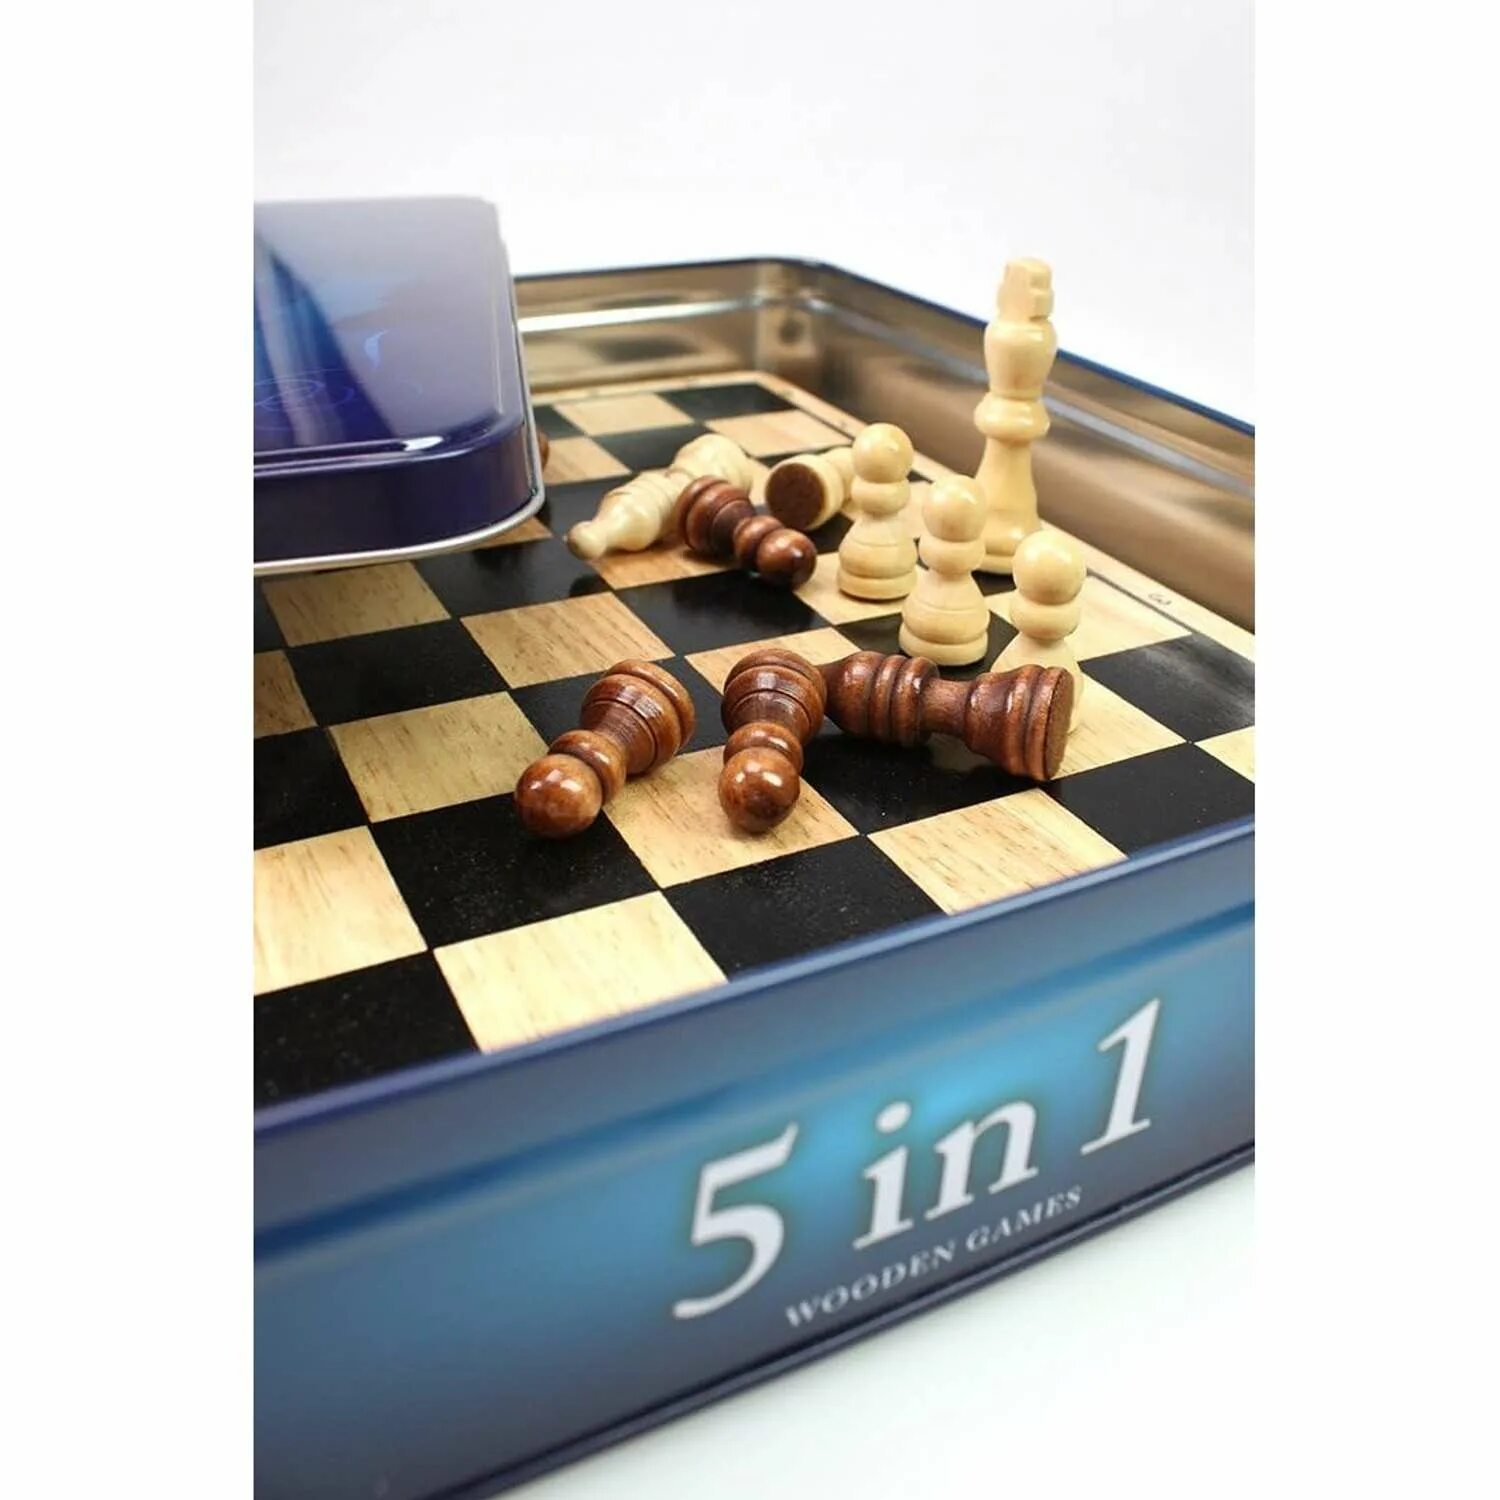 Домино крест. Шахматы шашки Домино подарочный набор игр 5. Крестики нолики , шашки шахматы в 1. Tactic 5 в 1 настольная игра. Шахматы 5 в 1.